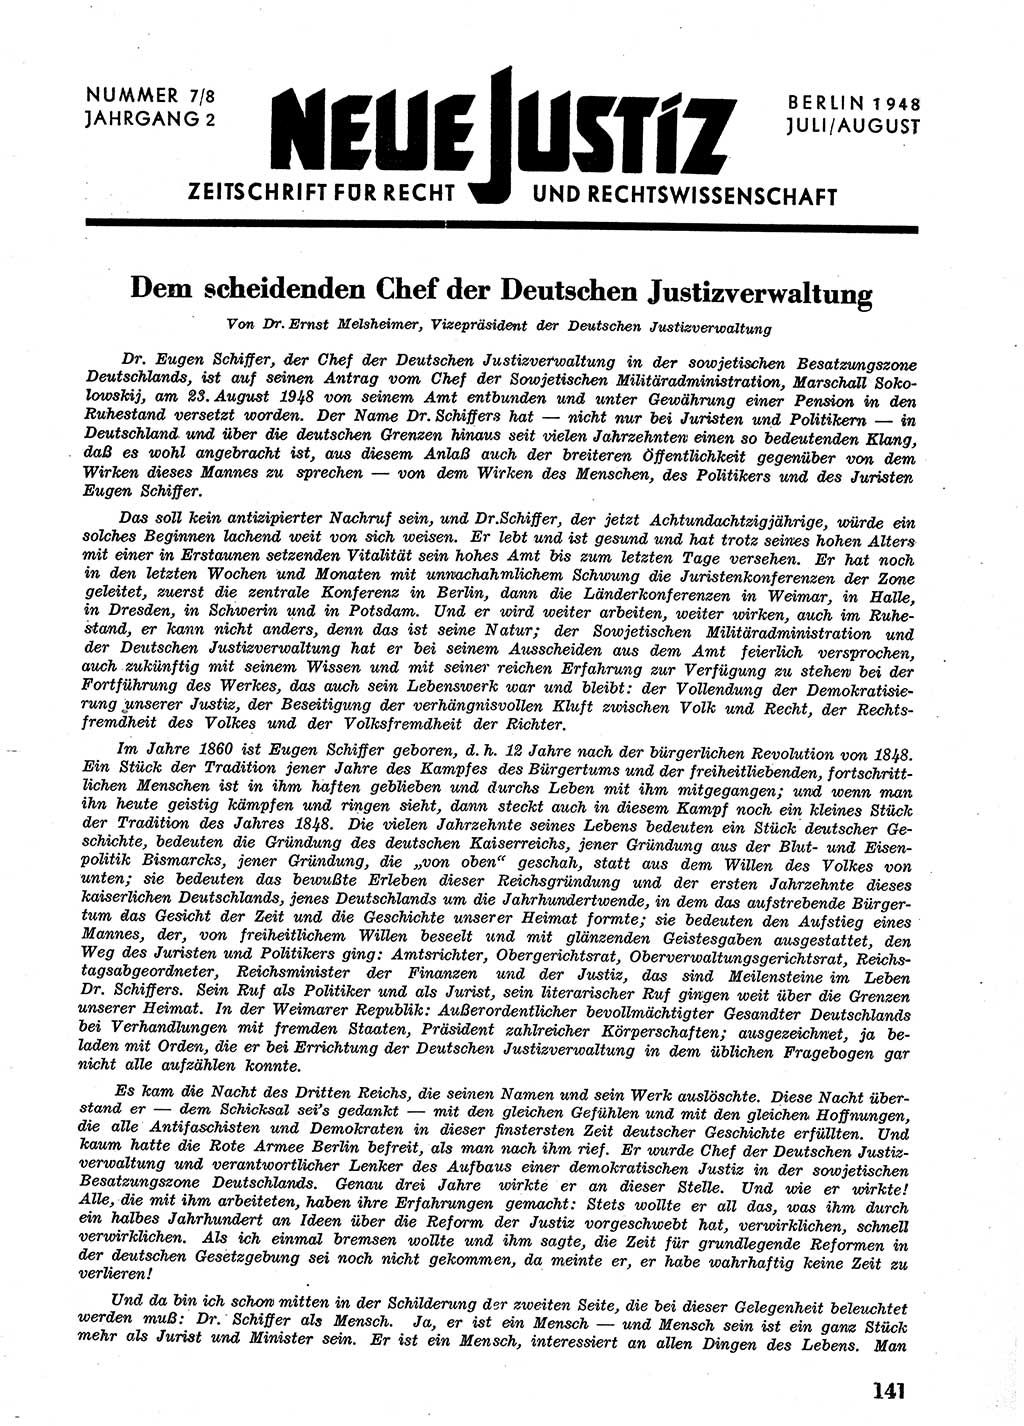 Neue Justiz (NJ), Zeitschrift für Recht und Rechtswissenschaft [Sowjetische Besatzungszone (SBZ) Deutschland], 2. Jahrgang 1948, Seite 141 (NJ SBZ Dtl. 1948, S. 141)